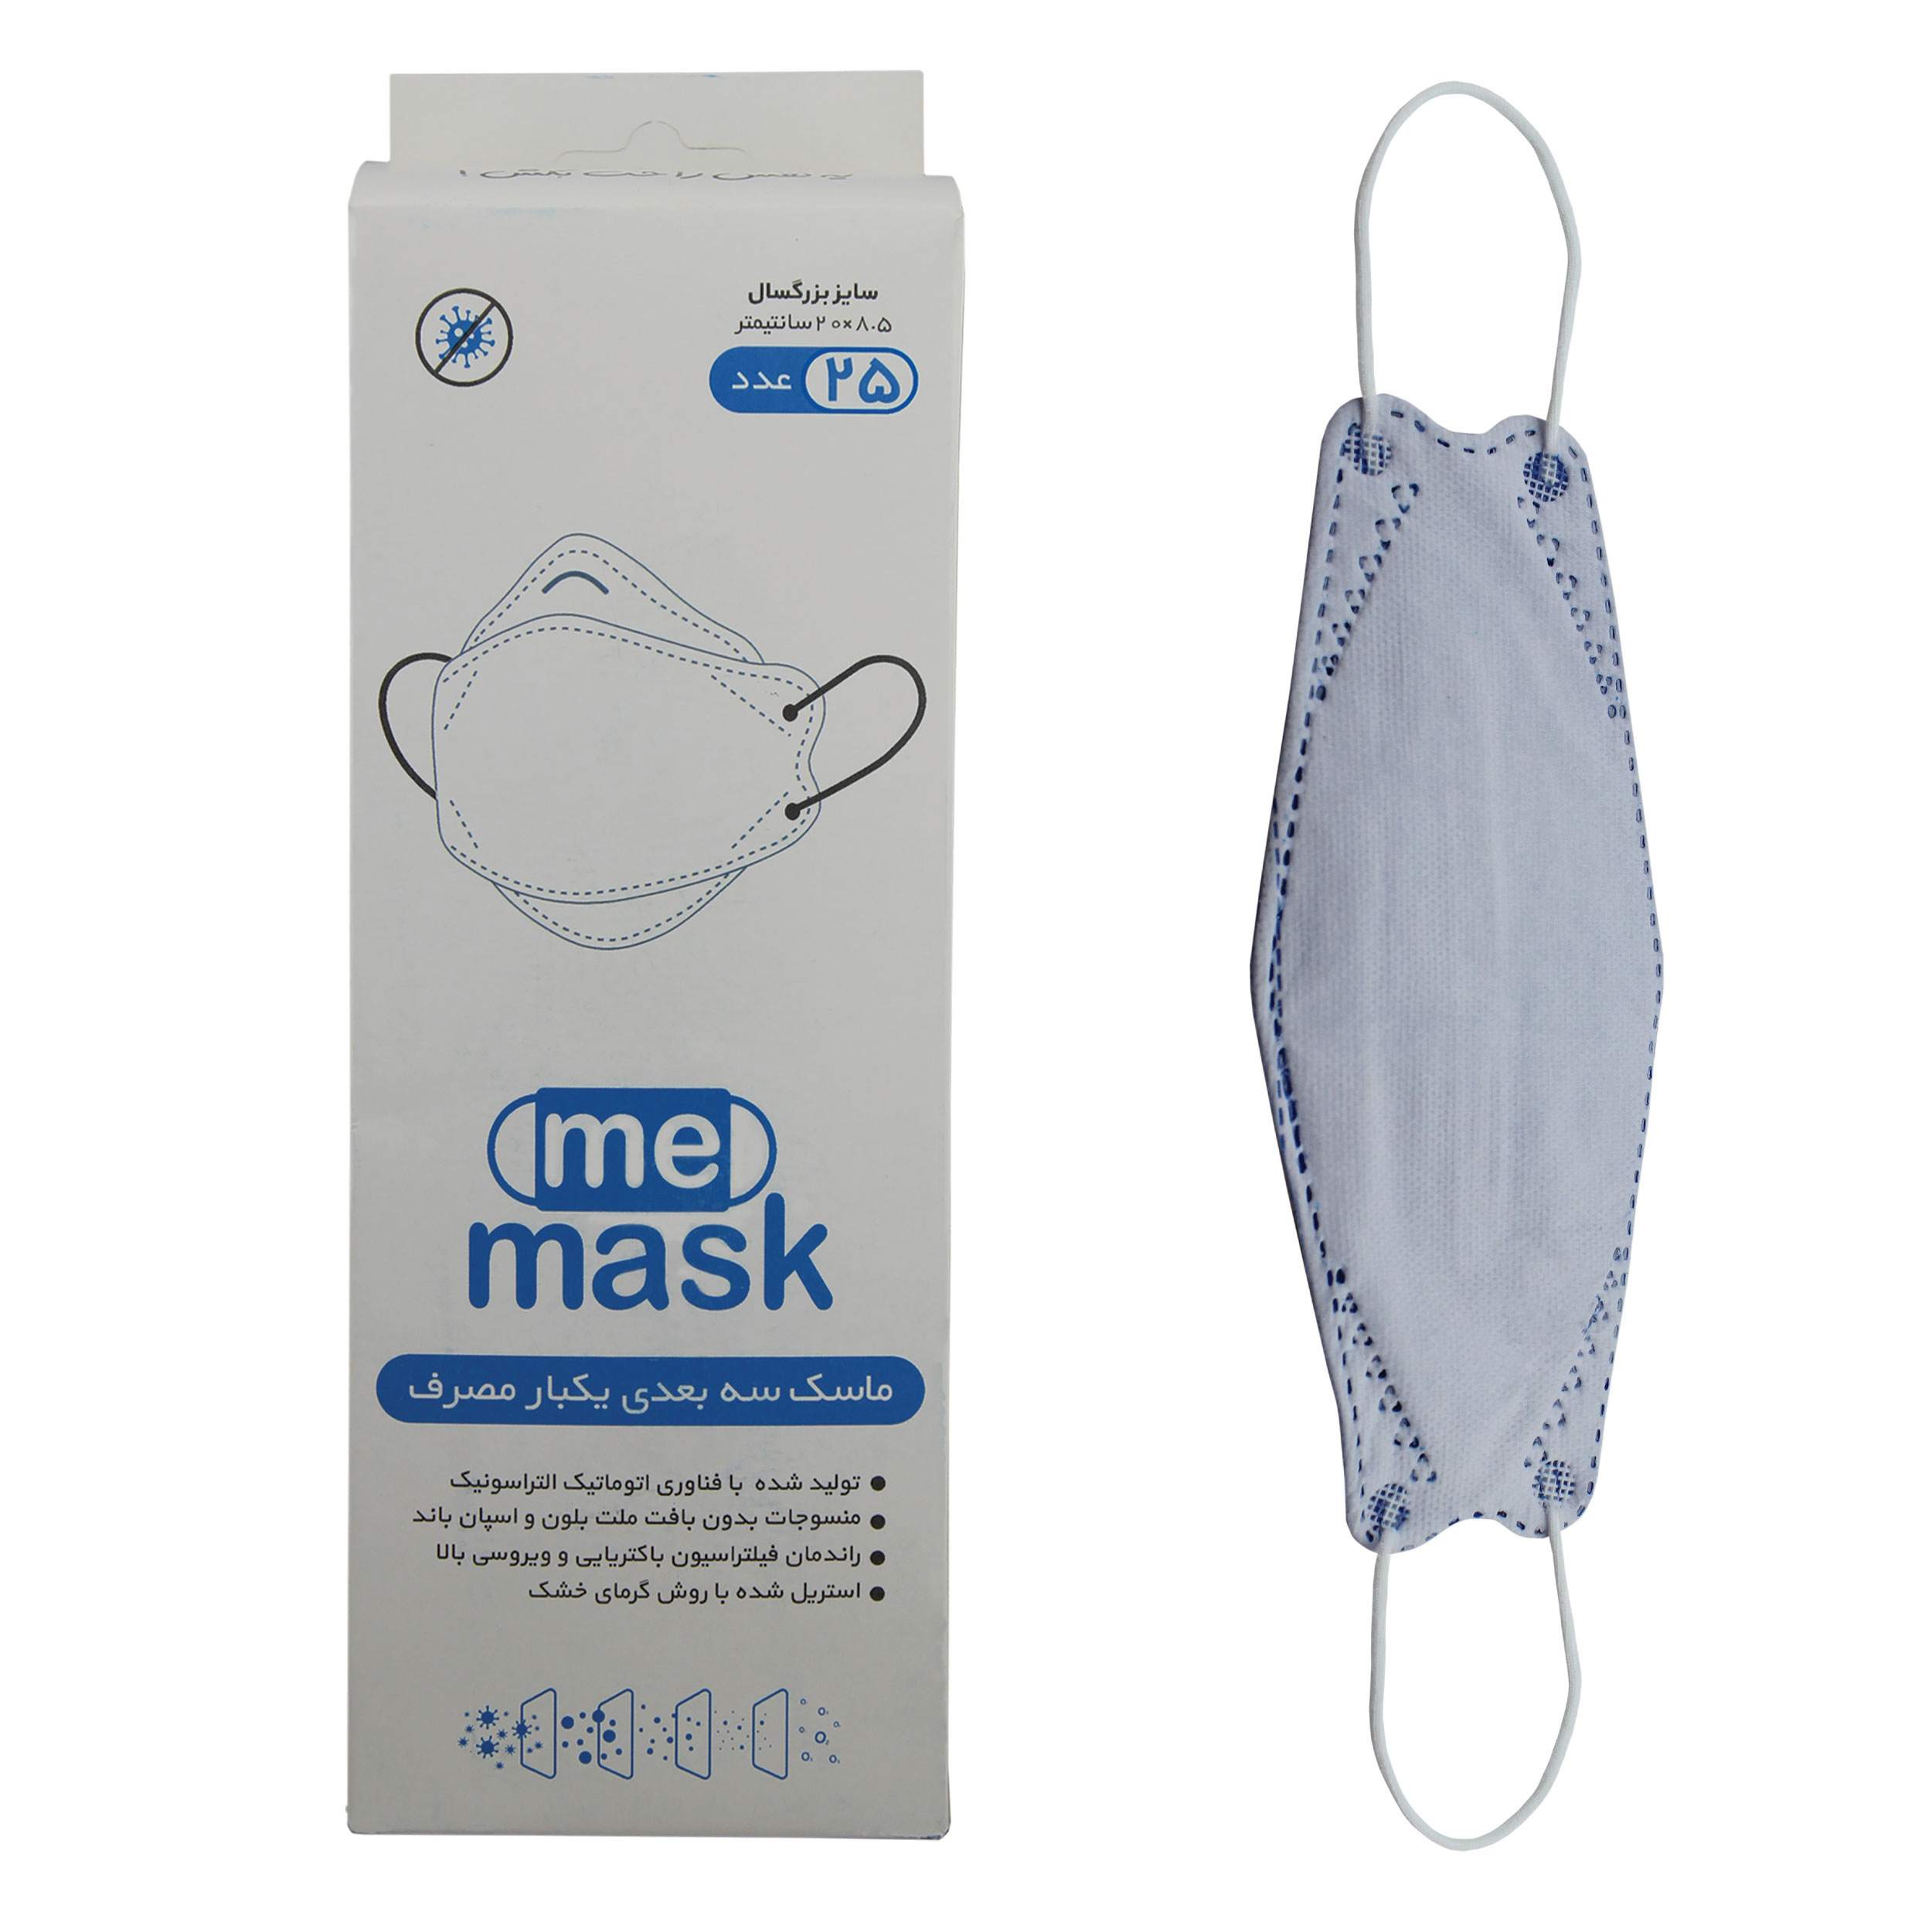 ماسک تنفسی می ماسک مدل سه بعدی Blu-25 بسته 25 عددی